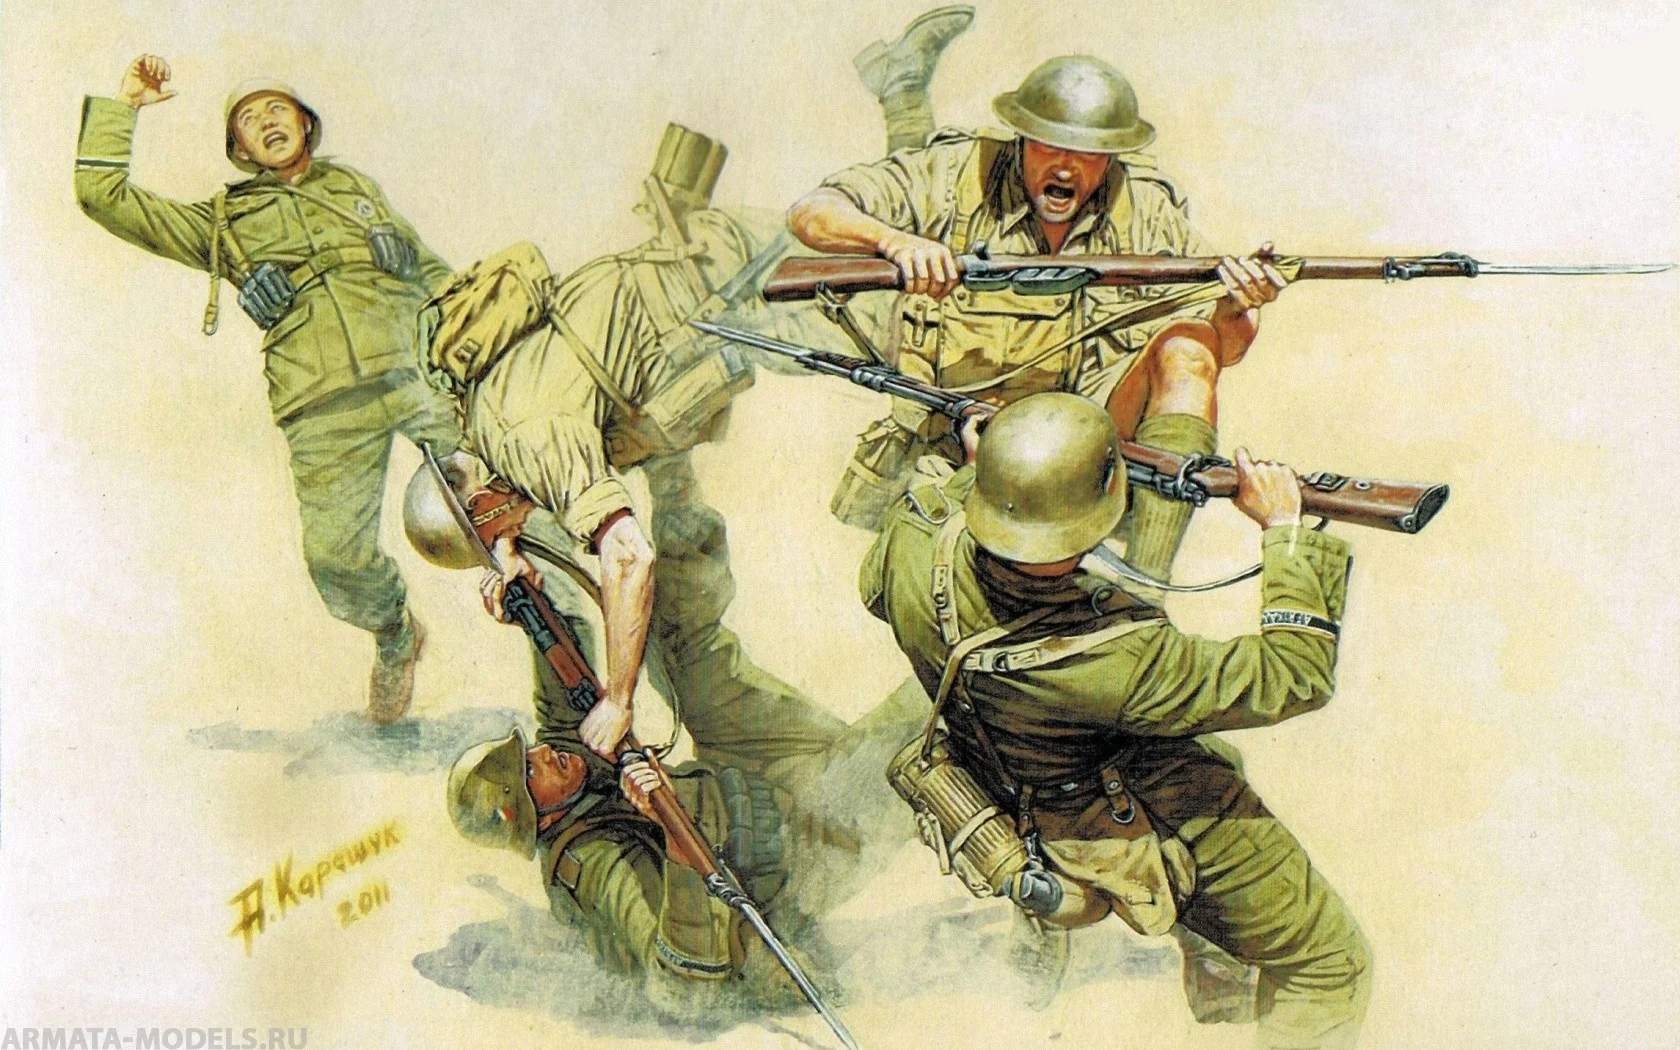 Набор фигурок MB3592 Рук в руки борьбы британские и немецкие пехотные фигуры -